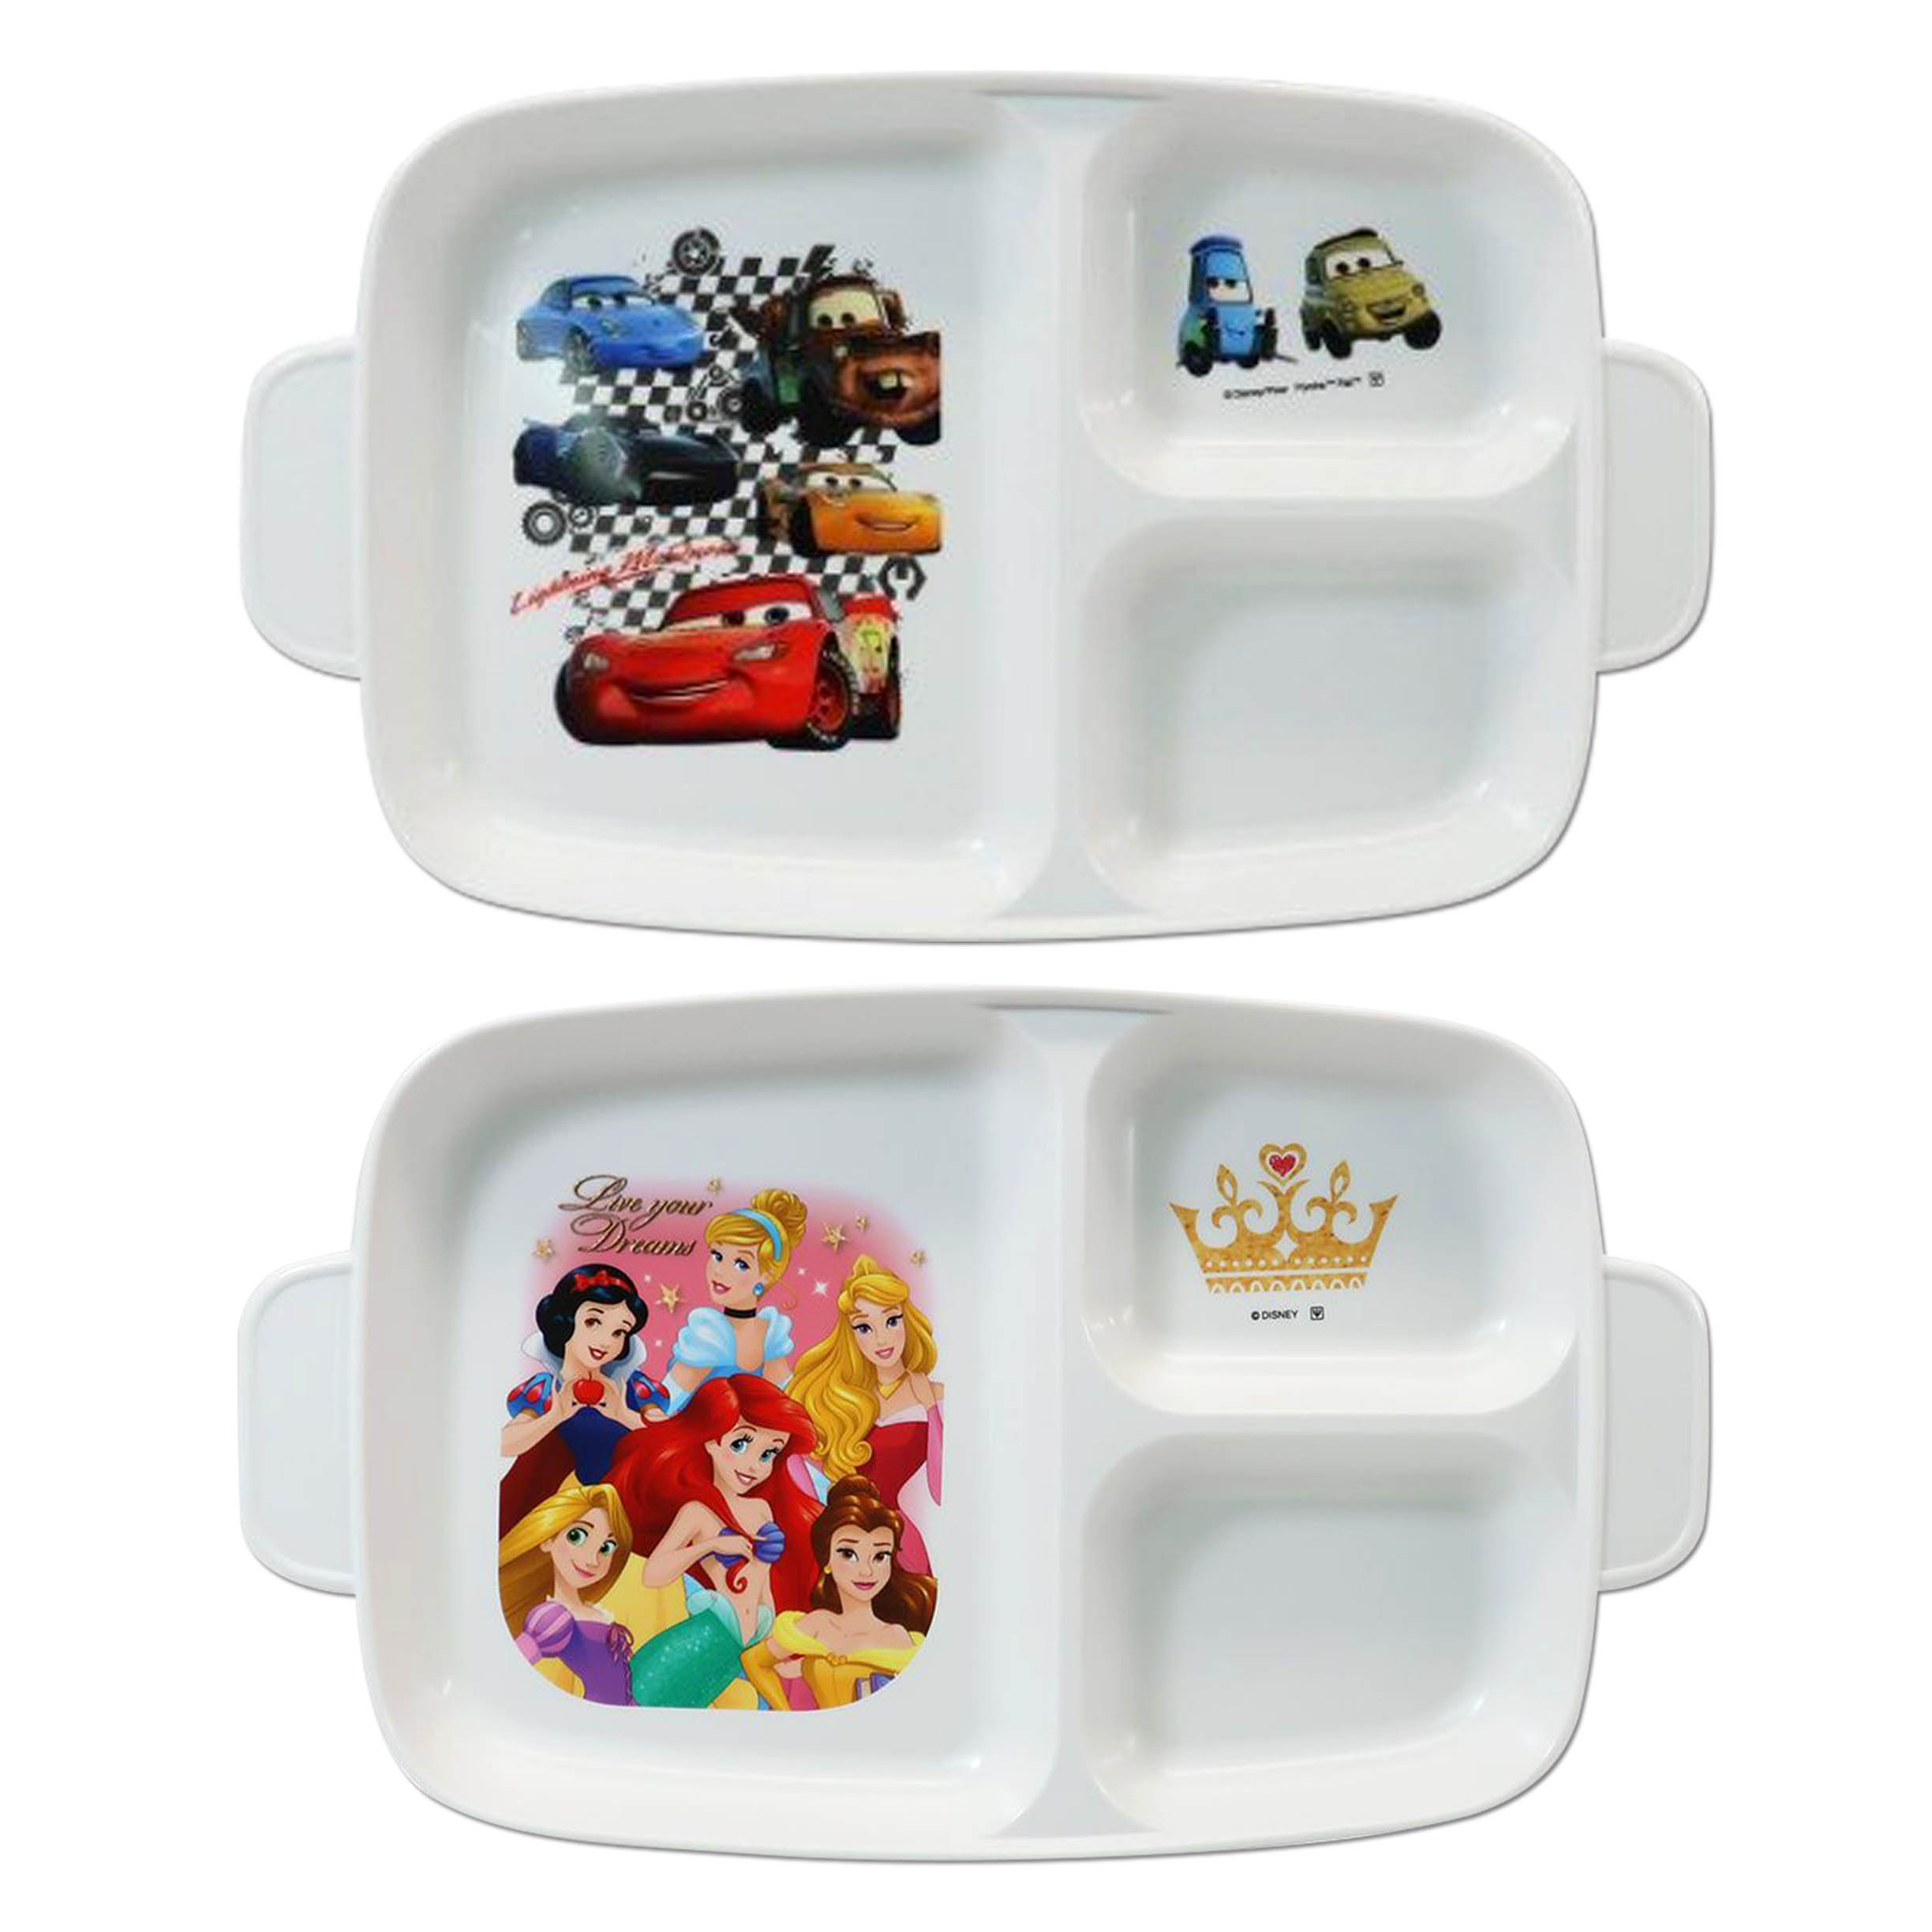 方形三格深形餐盤 日本 迪士尼 公主系列 汽車總動員 抗菌 菜盤 日本進口正版授權